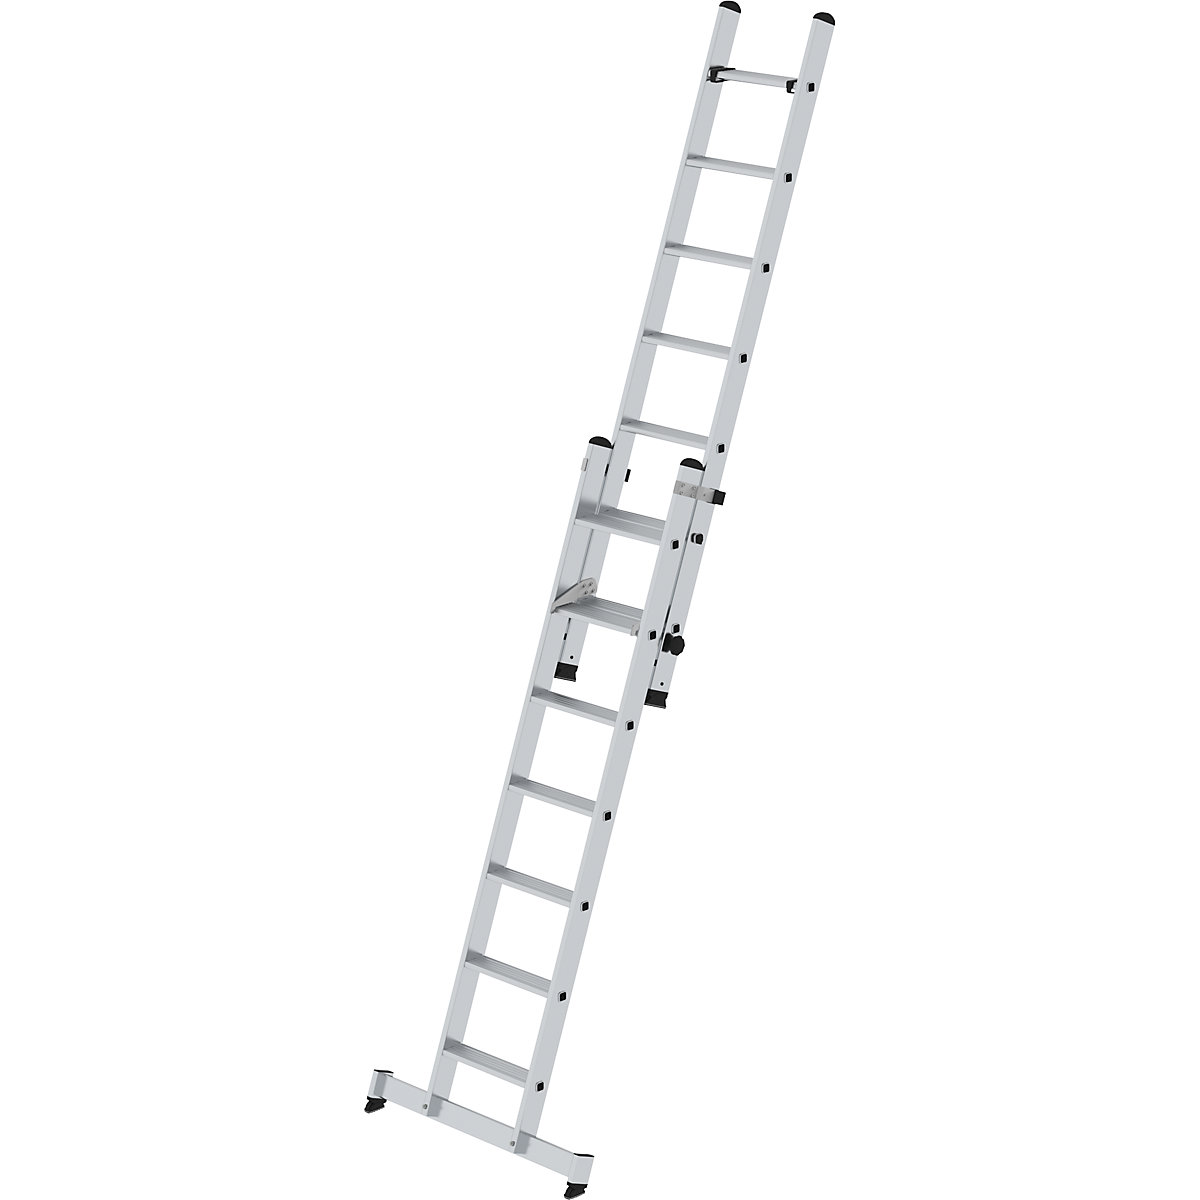 Extending step ladder, 2-part - MUNK